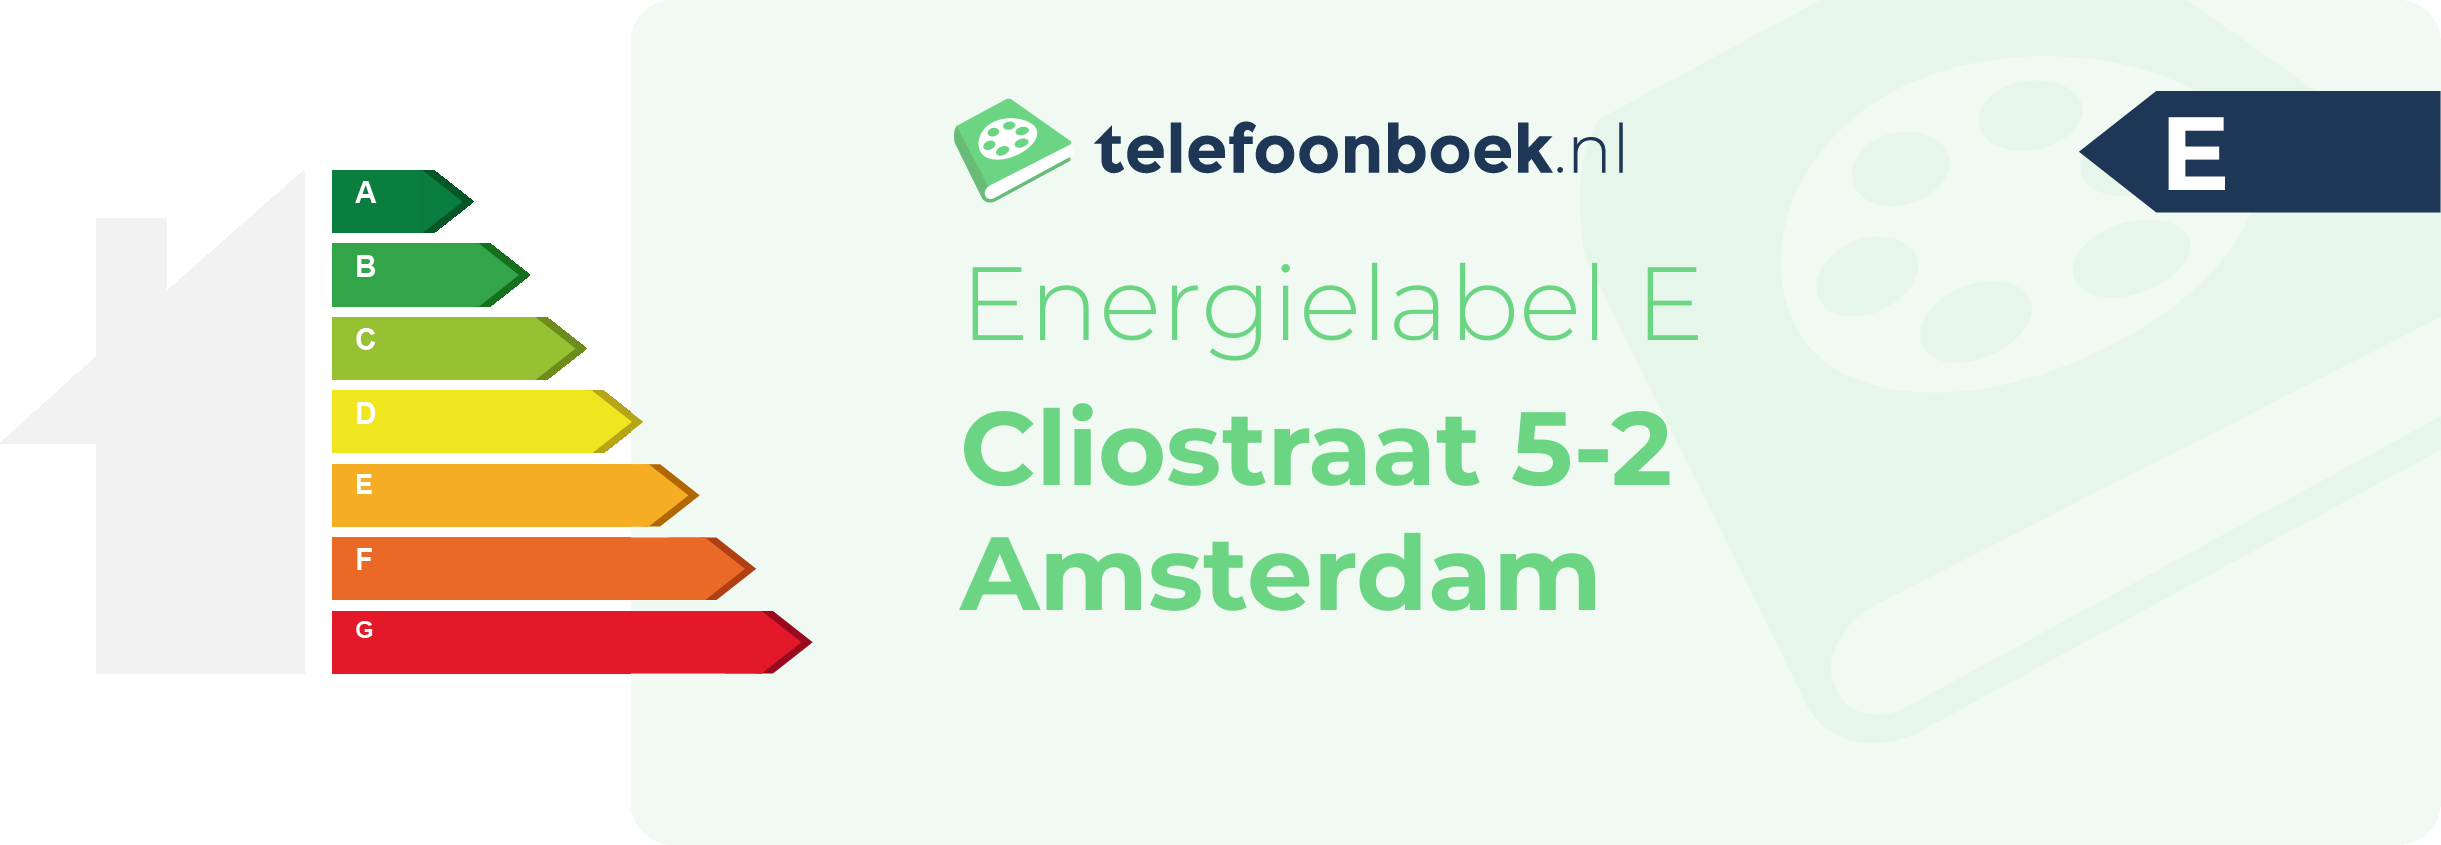 Energielabel Cliostraat 5-2 Amsterdam